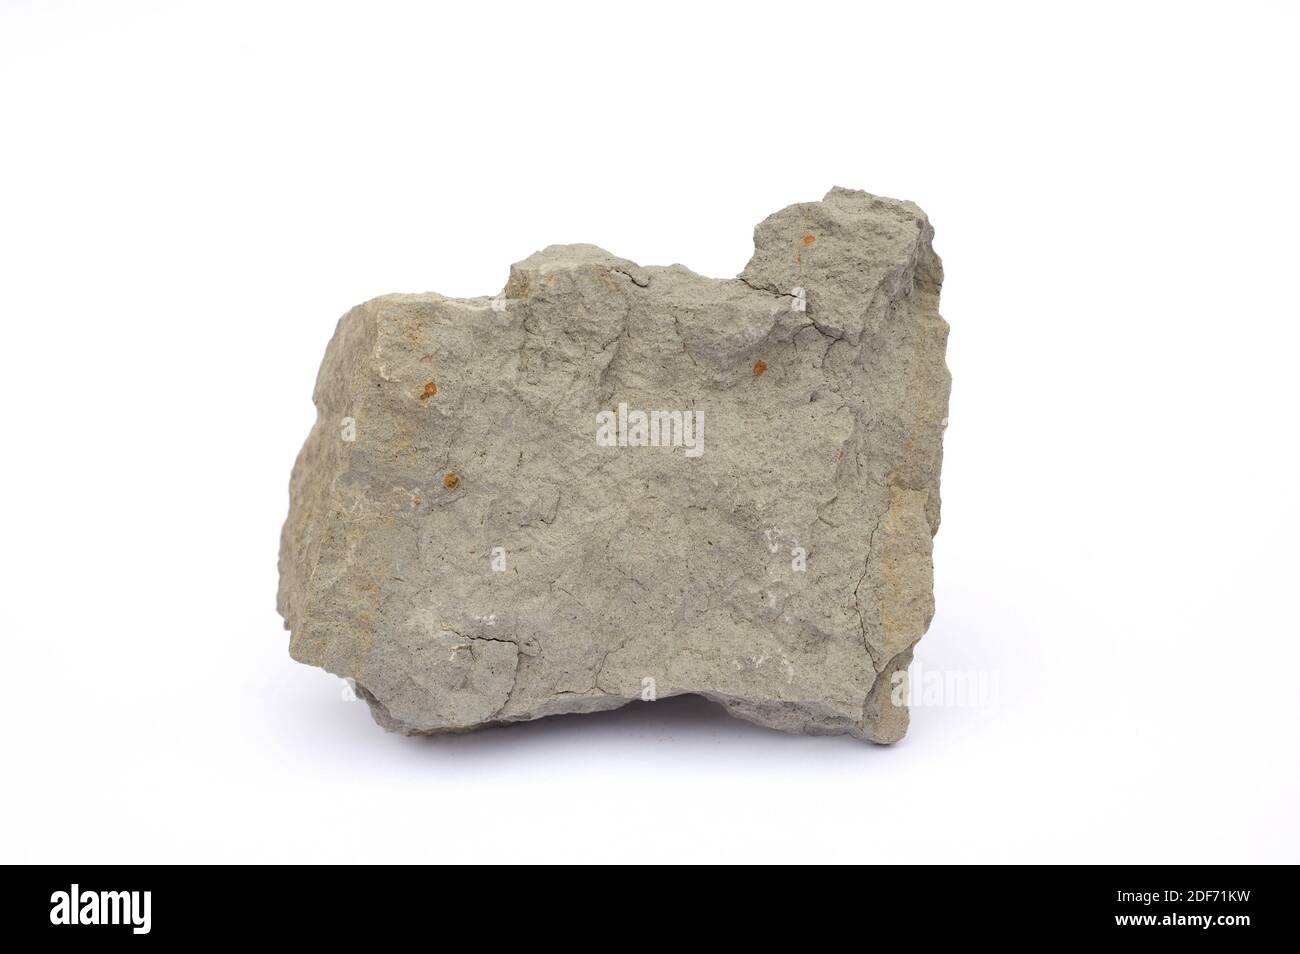 Marl o Marlstone è una roccia sedimentaria composta da calcare e argilla.  Questo campione proviene da Tona, provincia di Barcellona, Catalogna,  Spagna Foto stock - Alamy